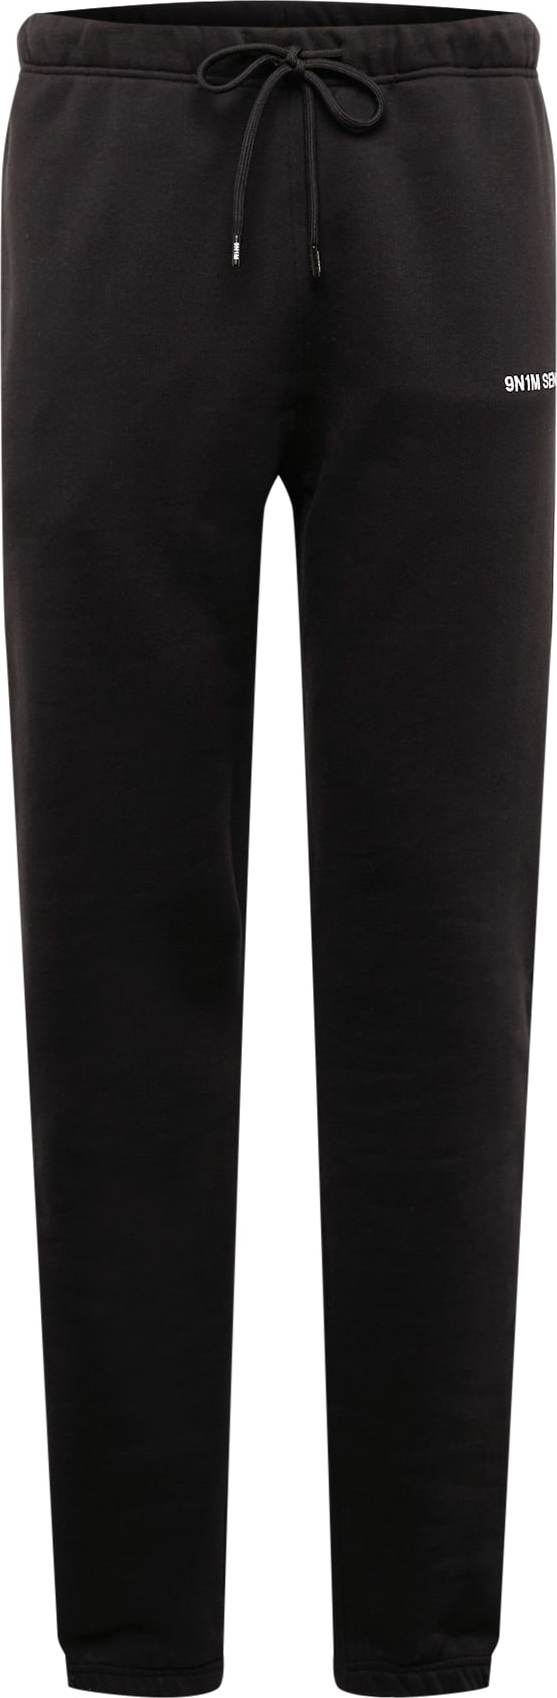 9N1M SENSE Kalhoty černá / bílá